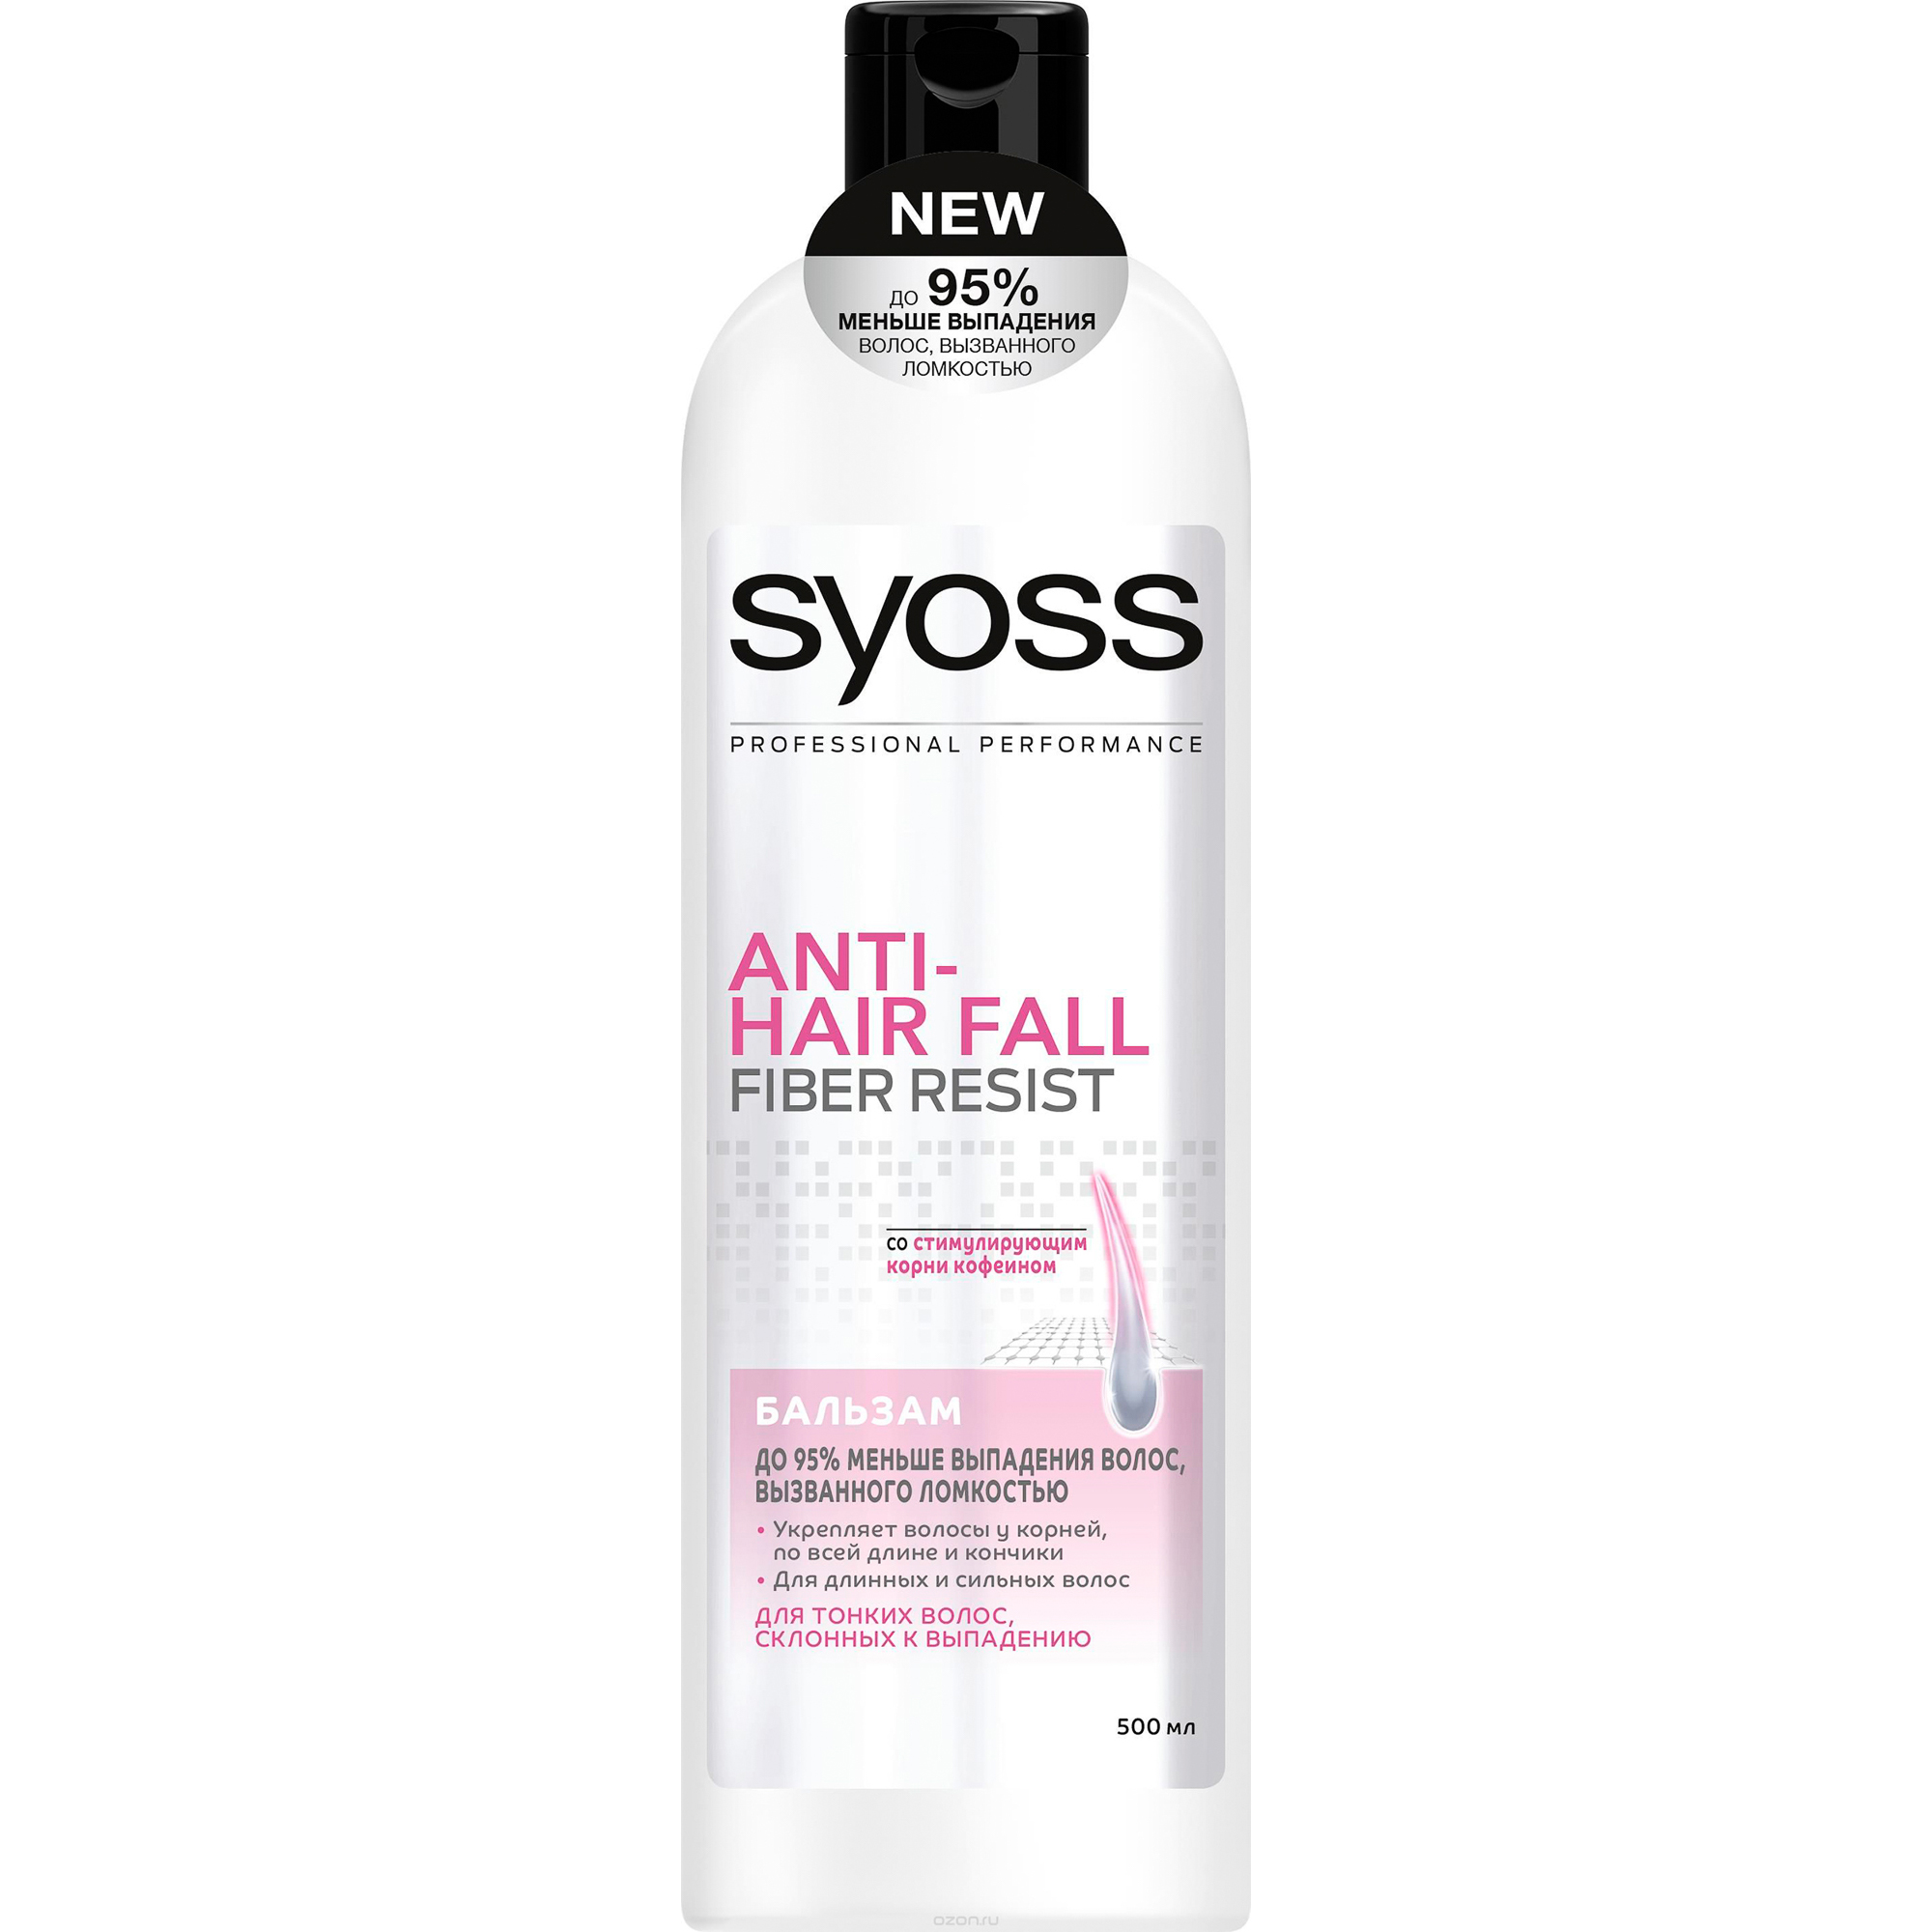 Бальзам SYOSS Anti-Hair Fall Fiber Resist 95 для склонных к выпадению волос 500 мл крем бальзам для рук смягчение и питание 75 г